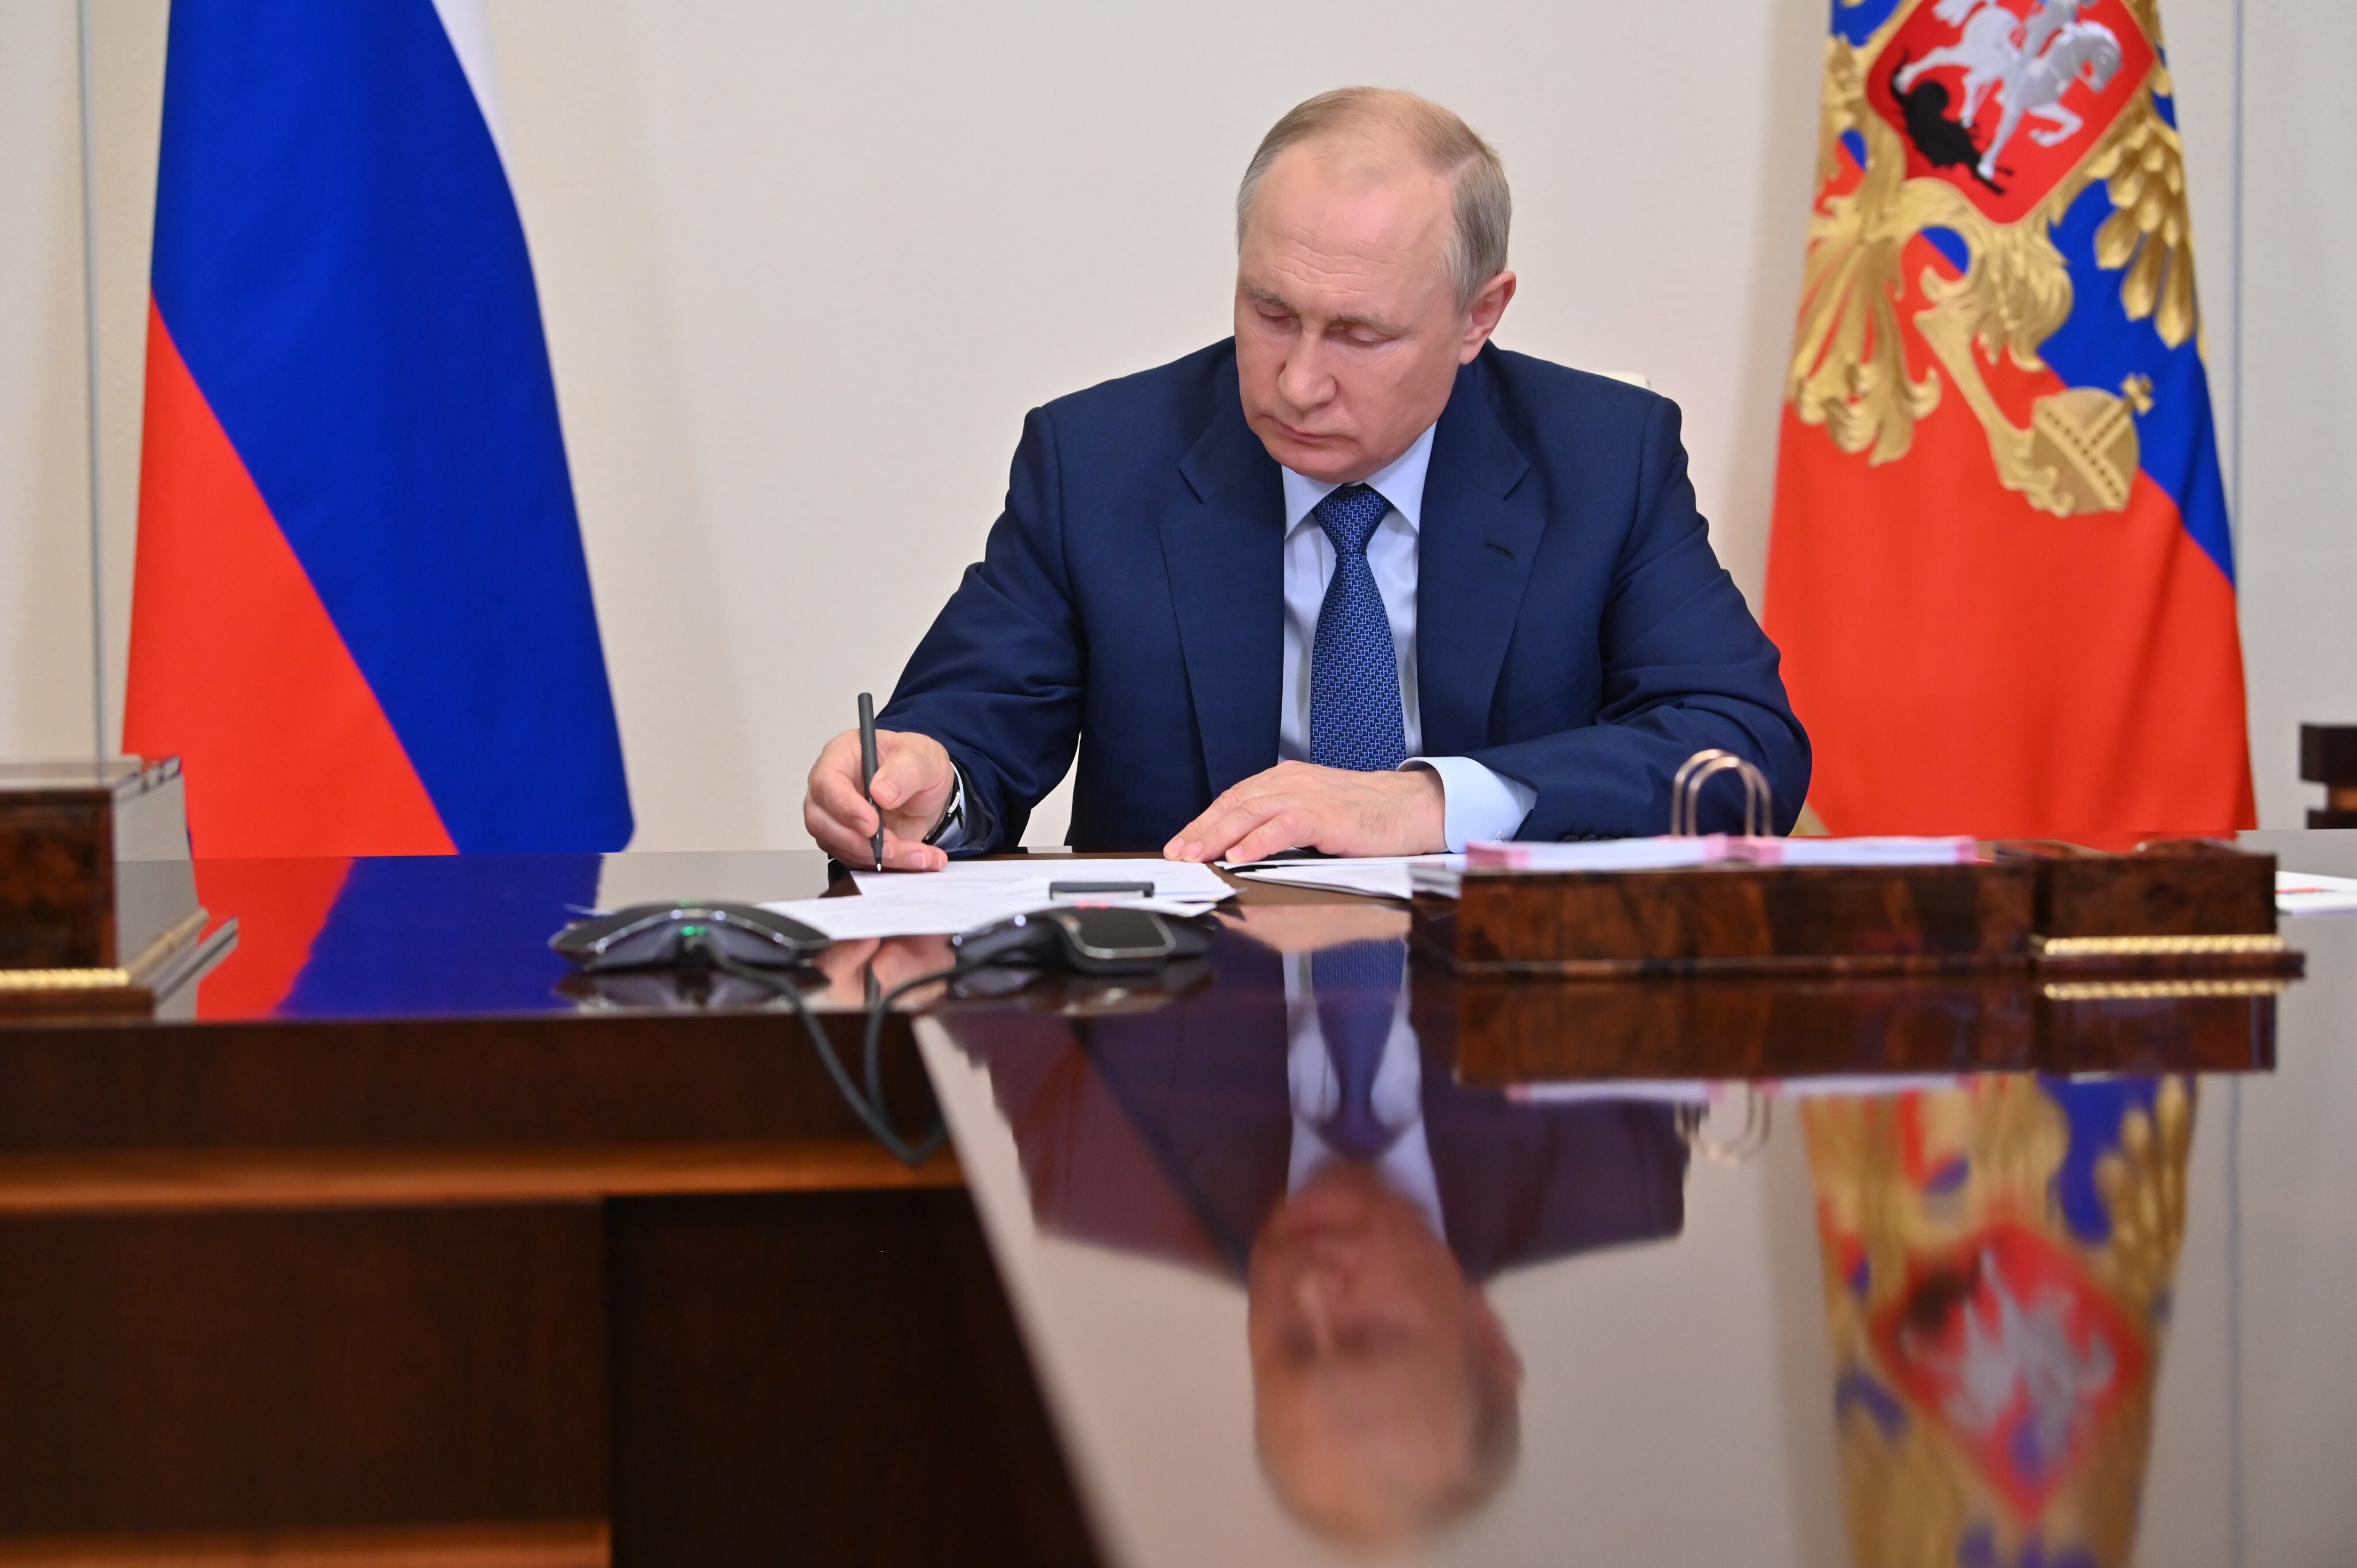 Євросоюз закликав Кремль скасувати указ про гуманітарну підтримку Донбасу